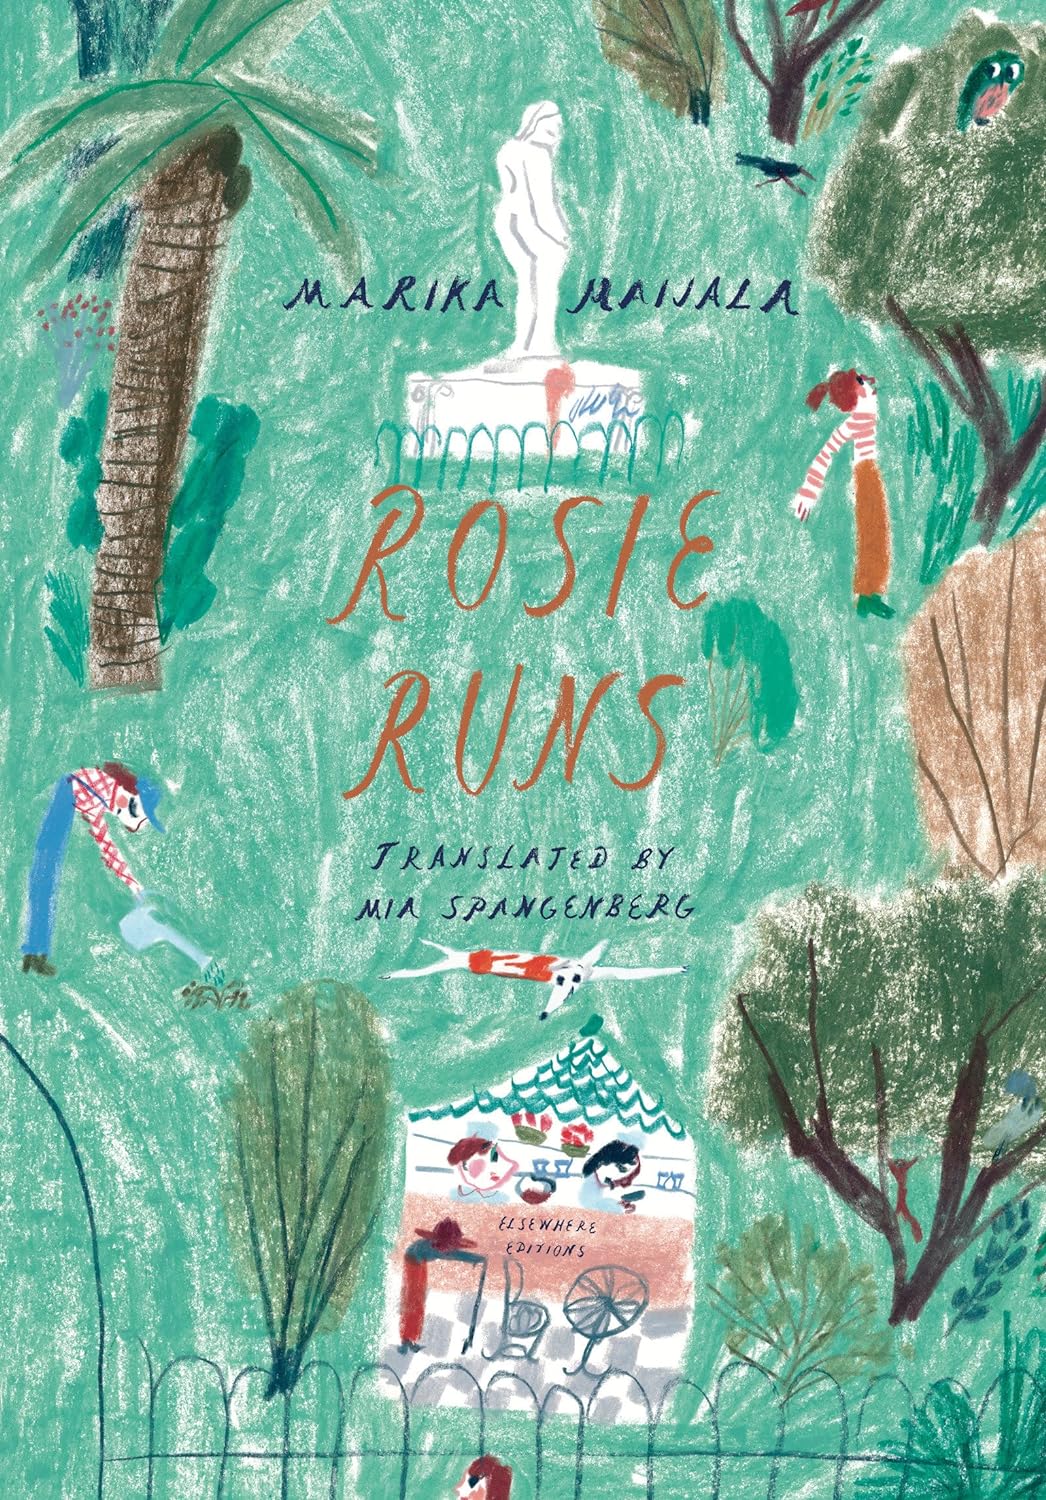 Rosie Runs by Marika Maijala